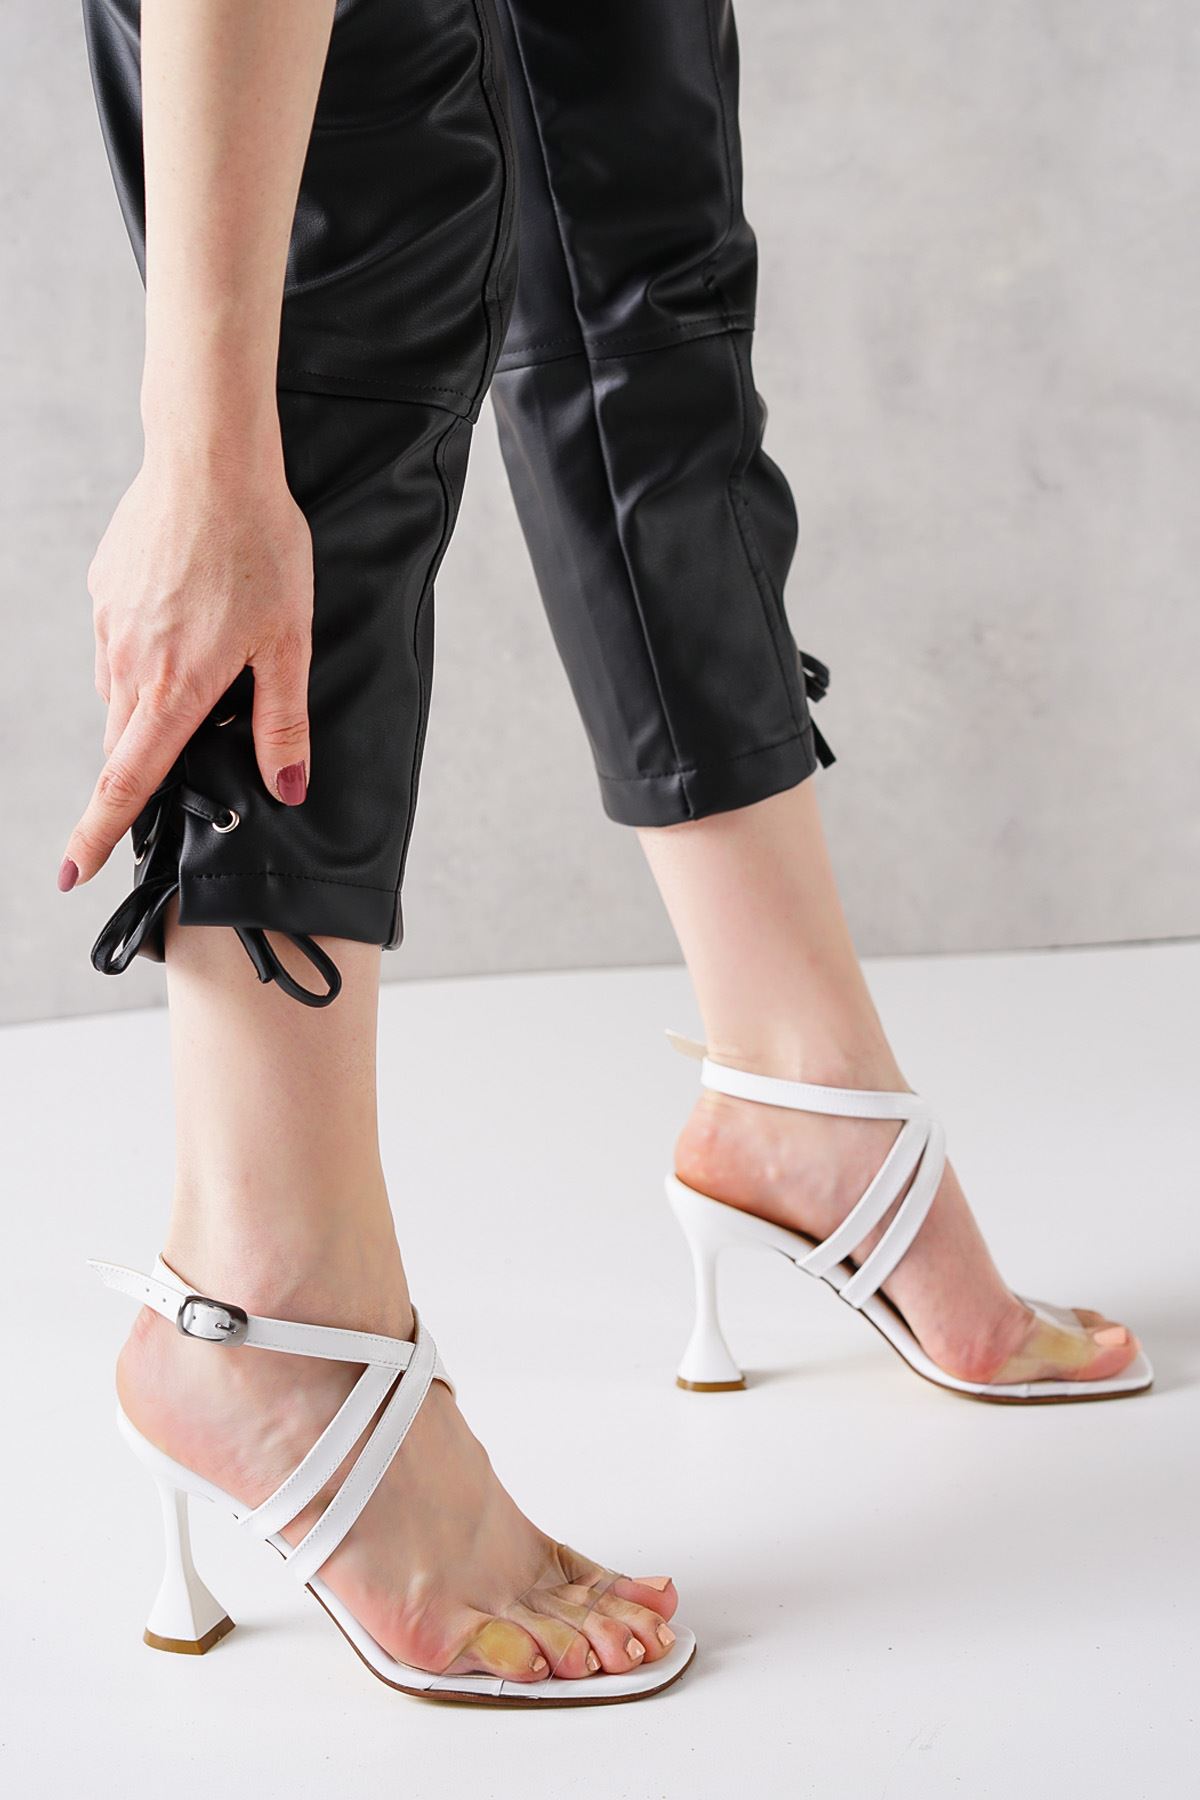 Clio Beyaz Cilt Kadın Yüksek Topuklu Ayakkabı